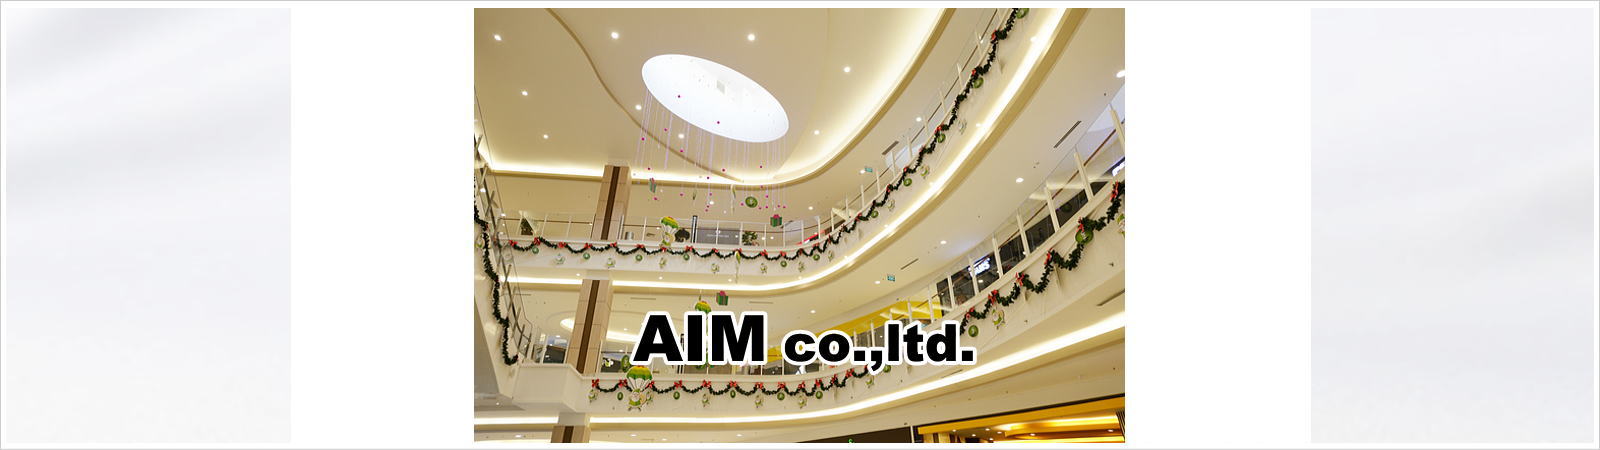 有限会社AIM-採用情報(アイム)|愛知県岡崎市を拠点にファッションブランド商品の販売及び通信販売をしています。